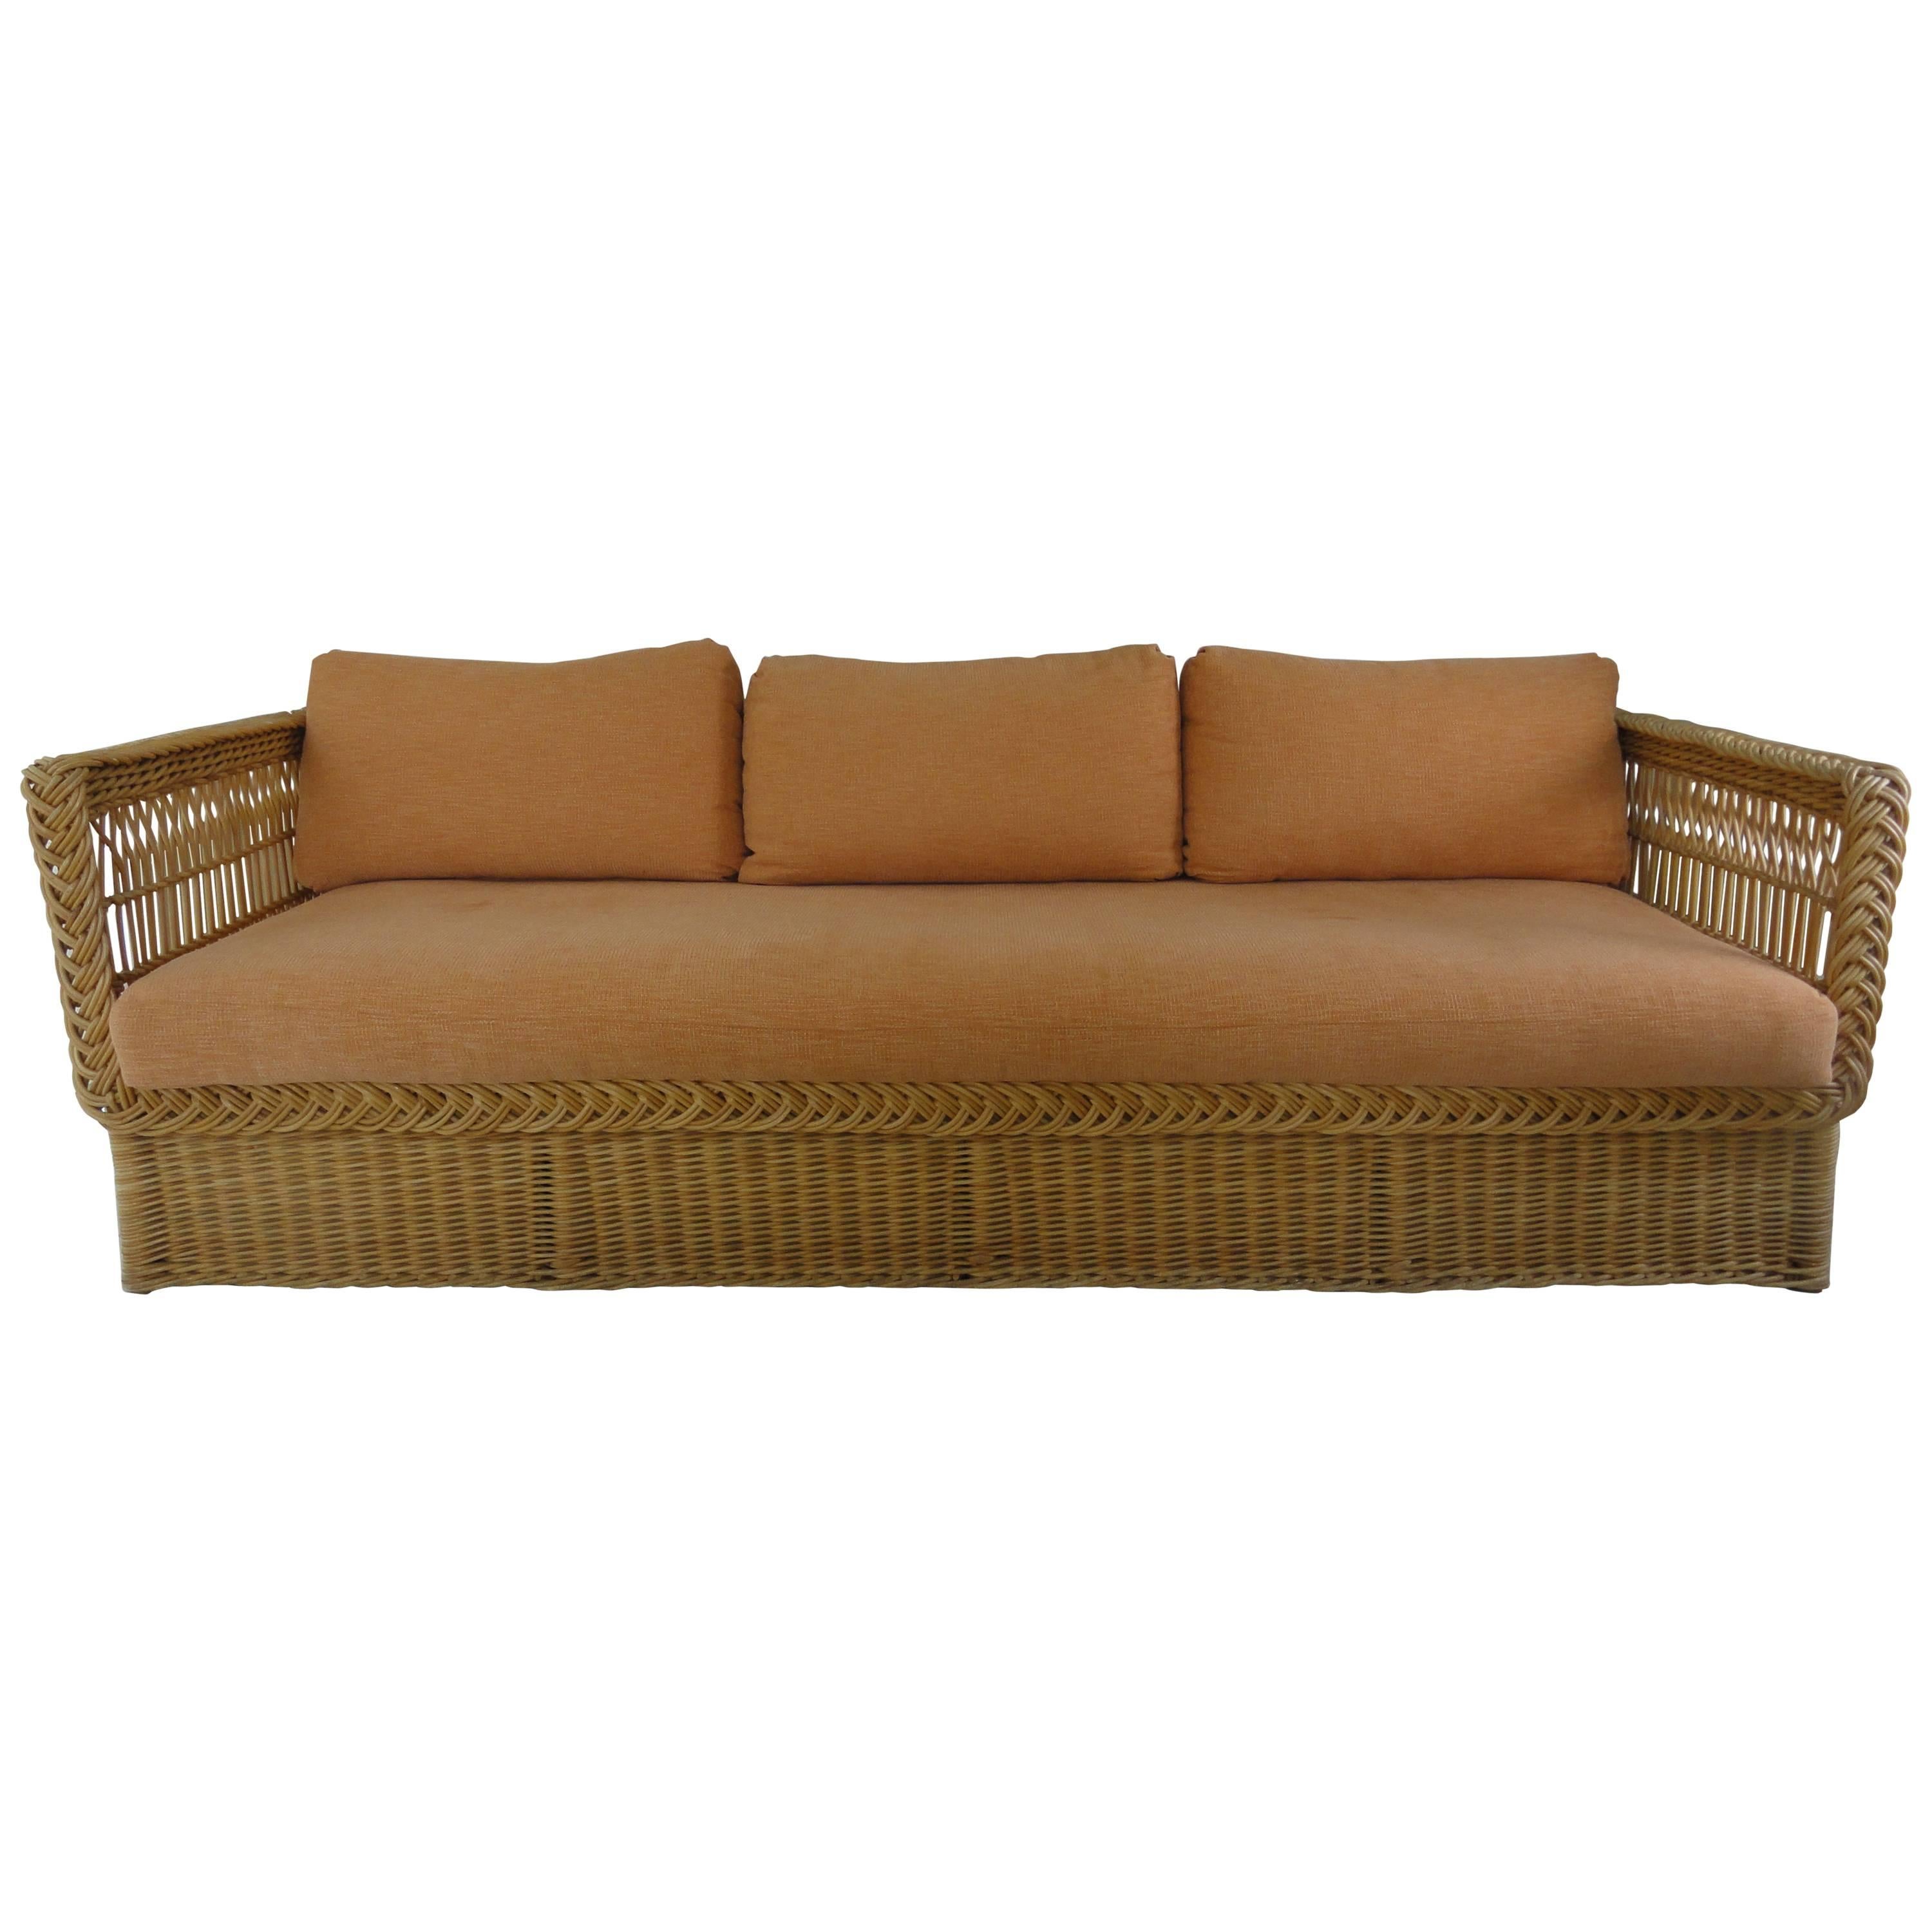 Bielecky Wicker Sofa